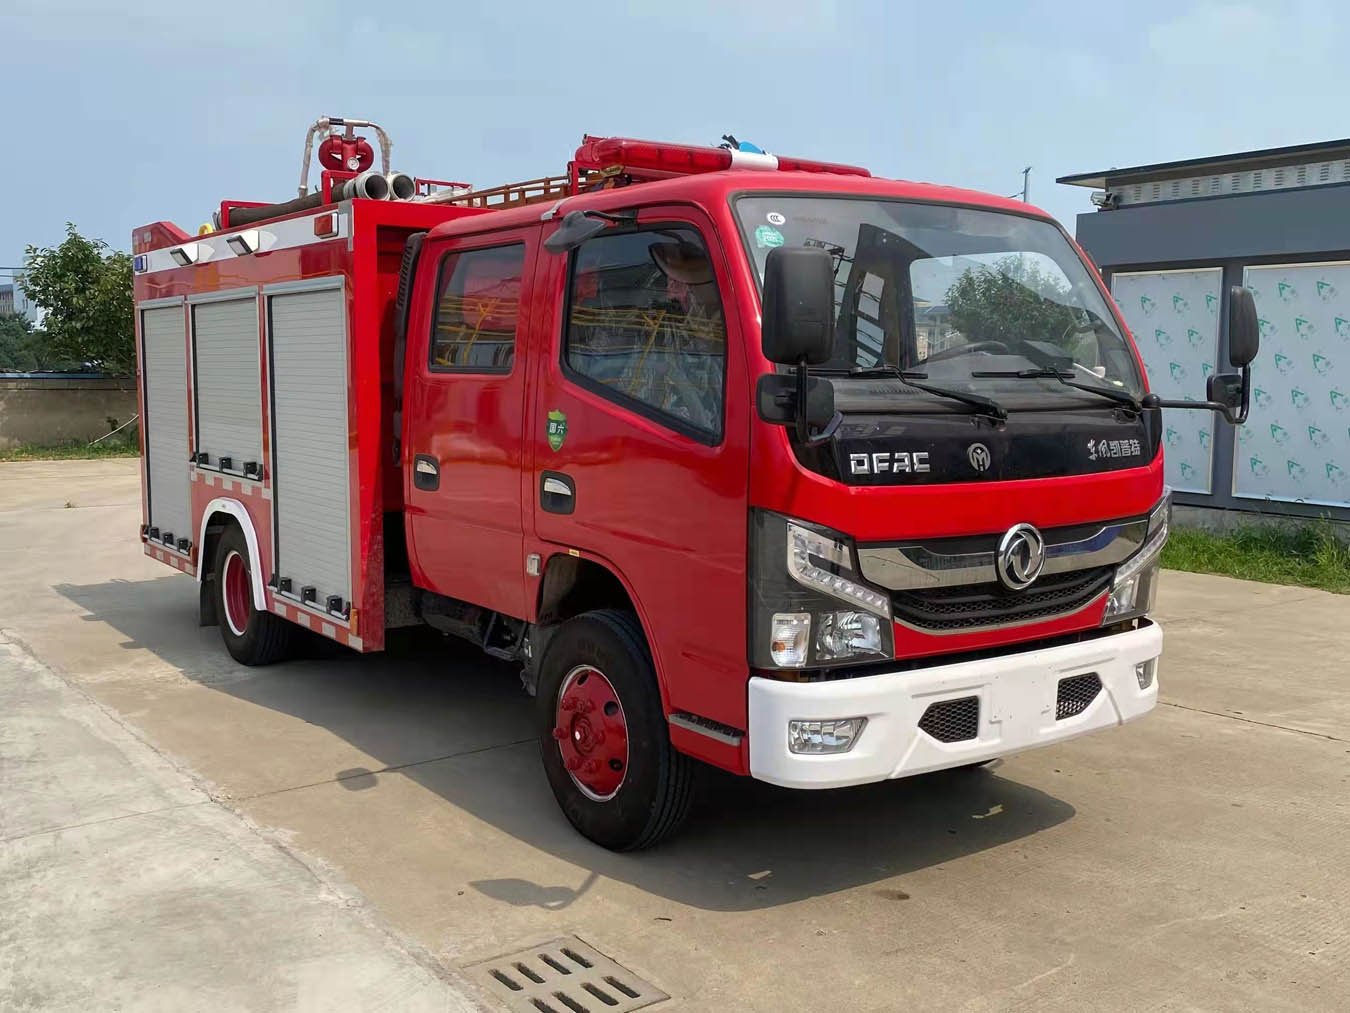 海翔龙牌水罐消防车(AXF5070GXFSG25)发展趋势分析什么驾驶证可以开消防运兵车